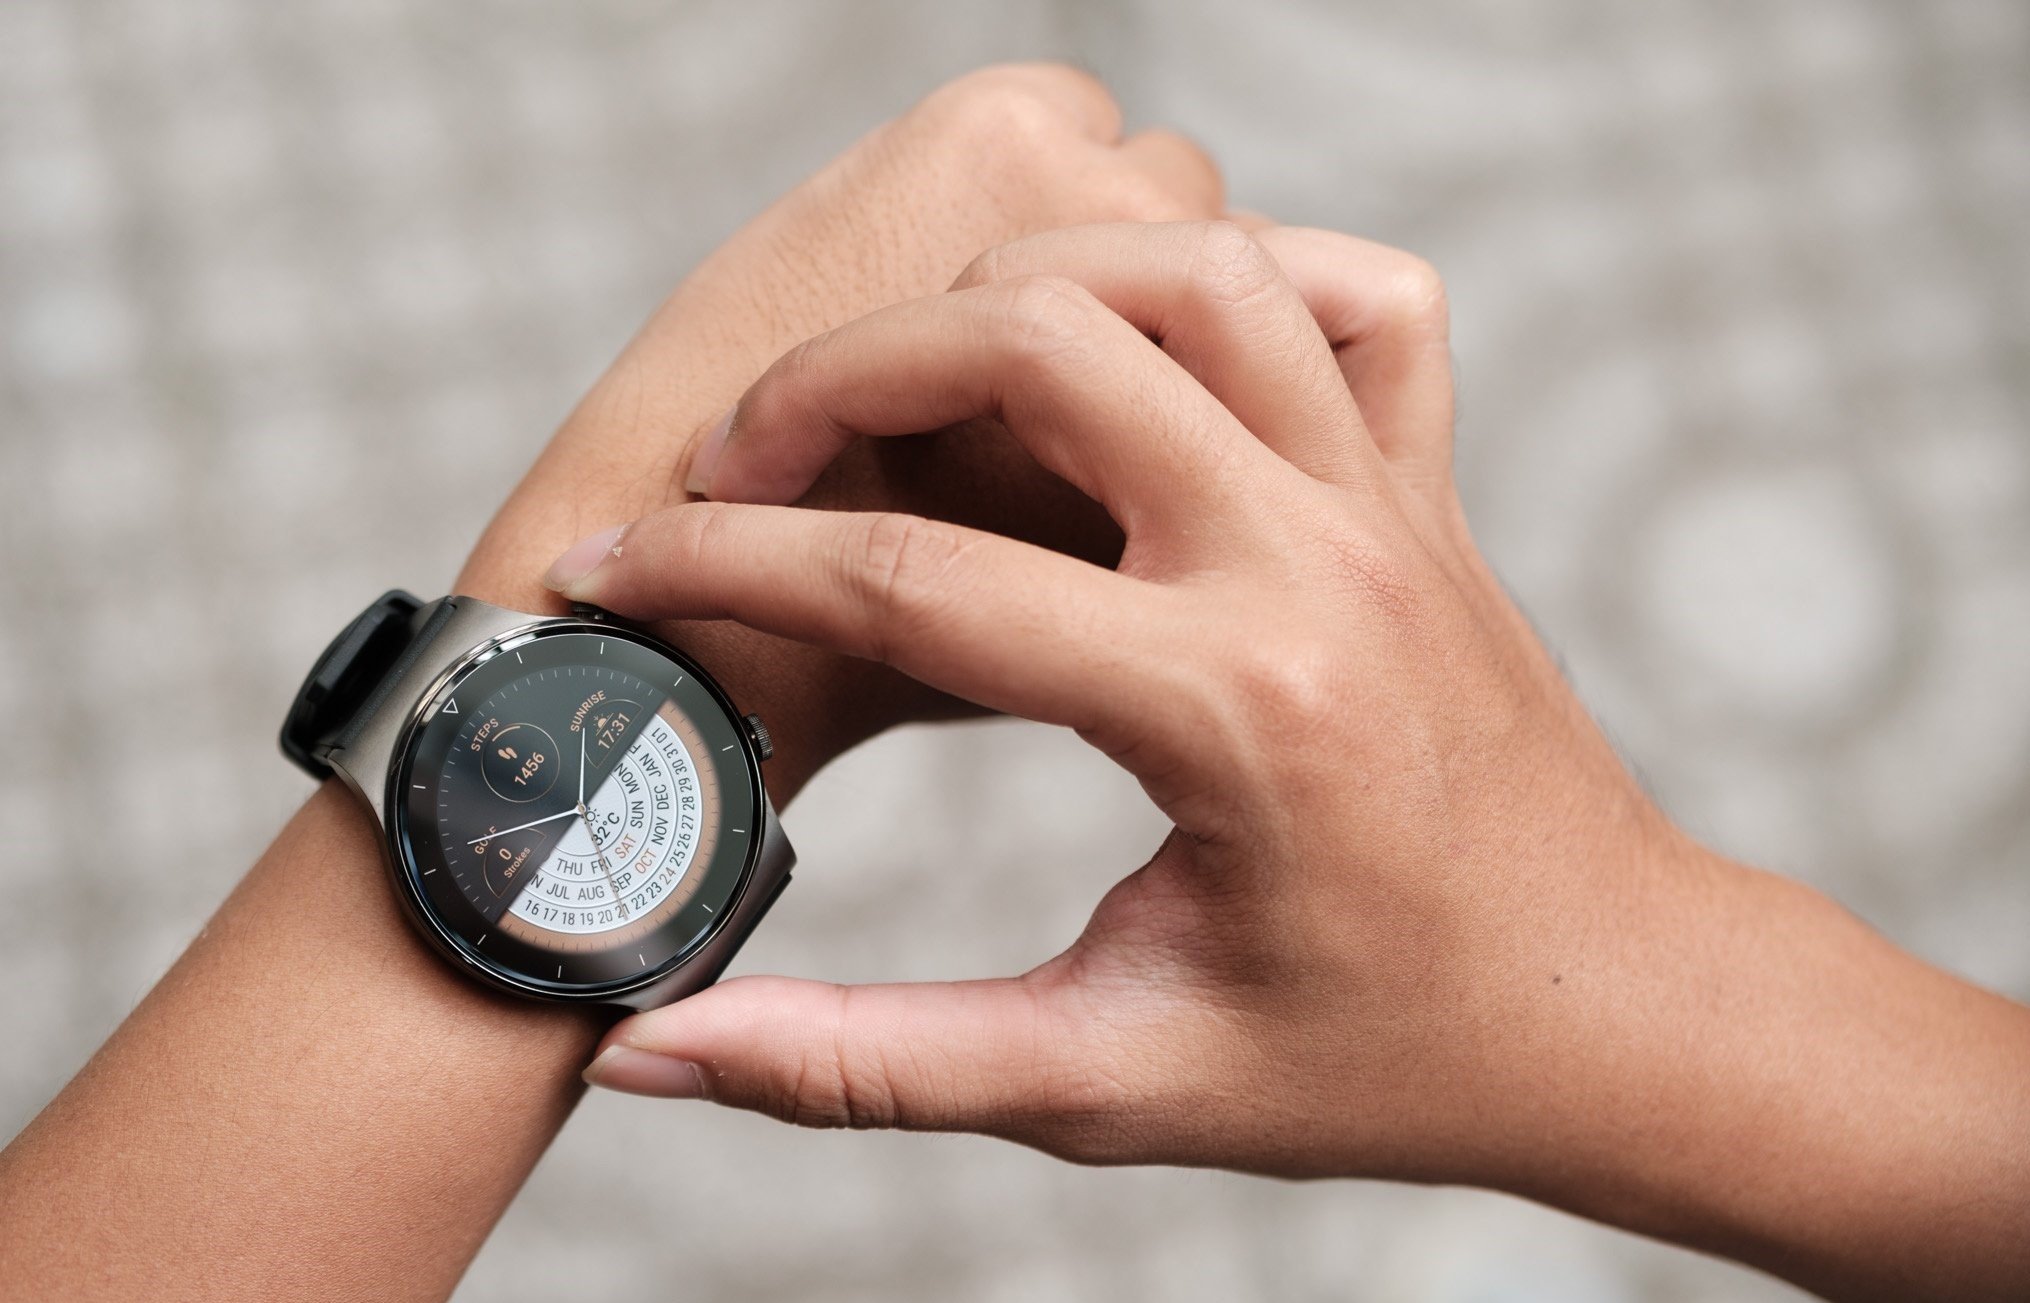 Test thời lượng sử pin thực tế của Huawei Watch GT 2 Pro